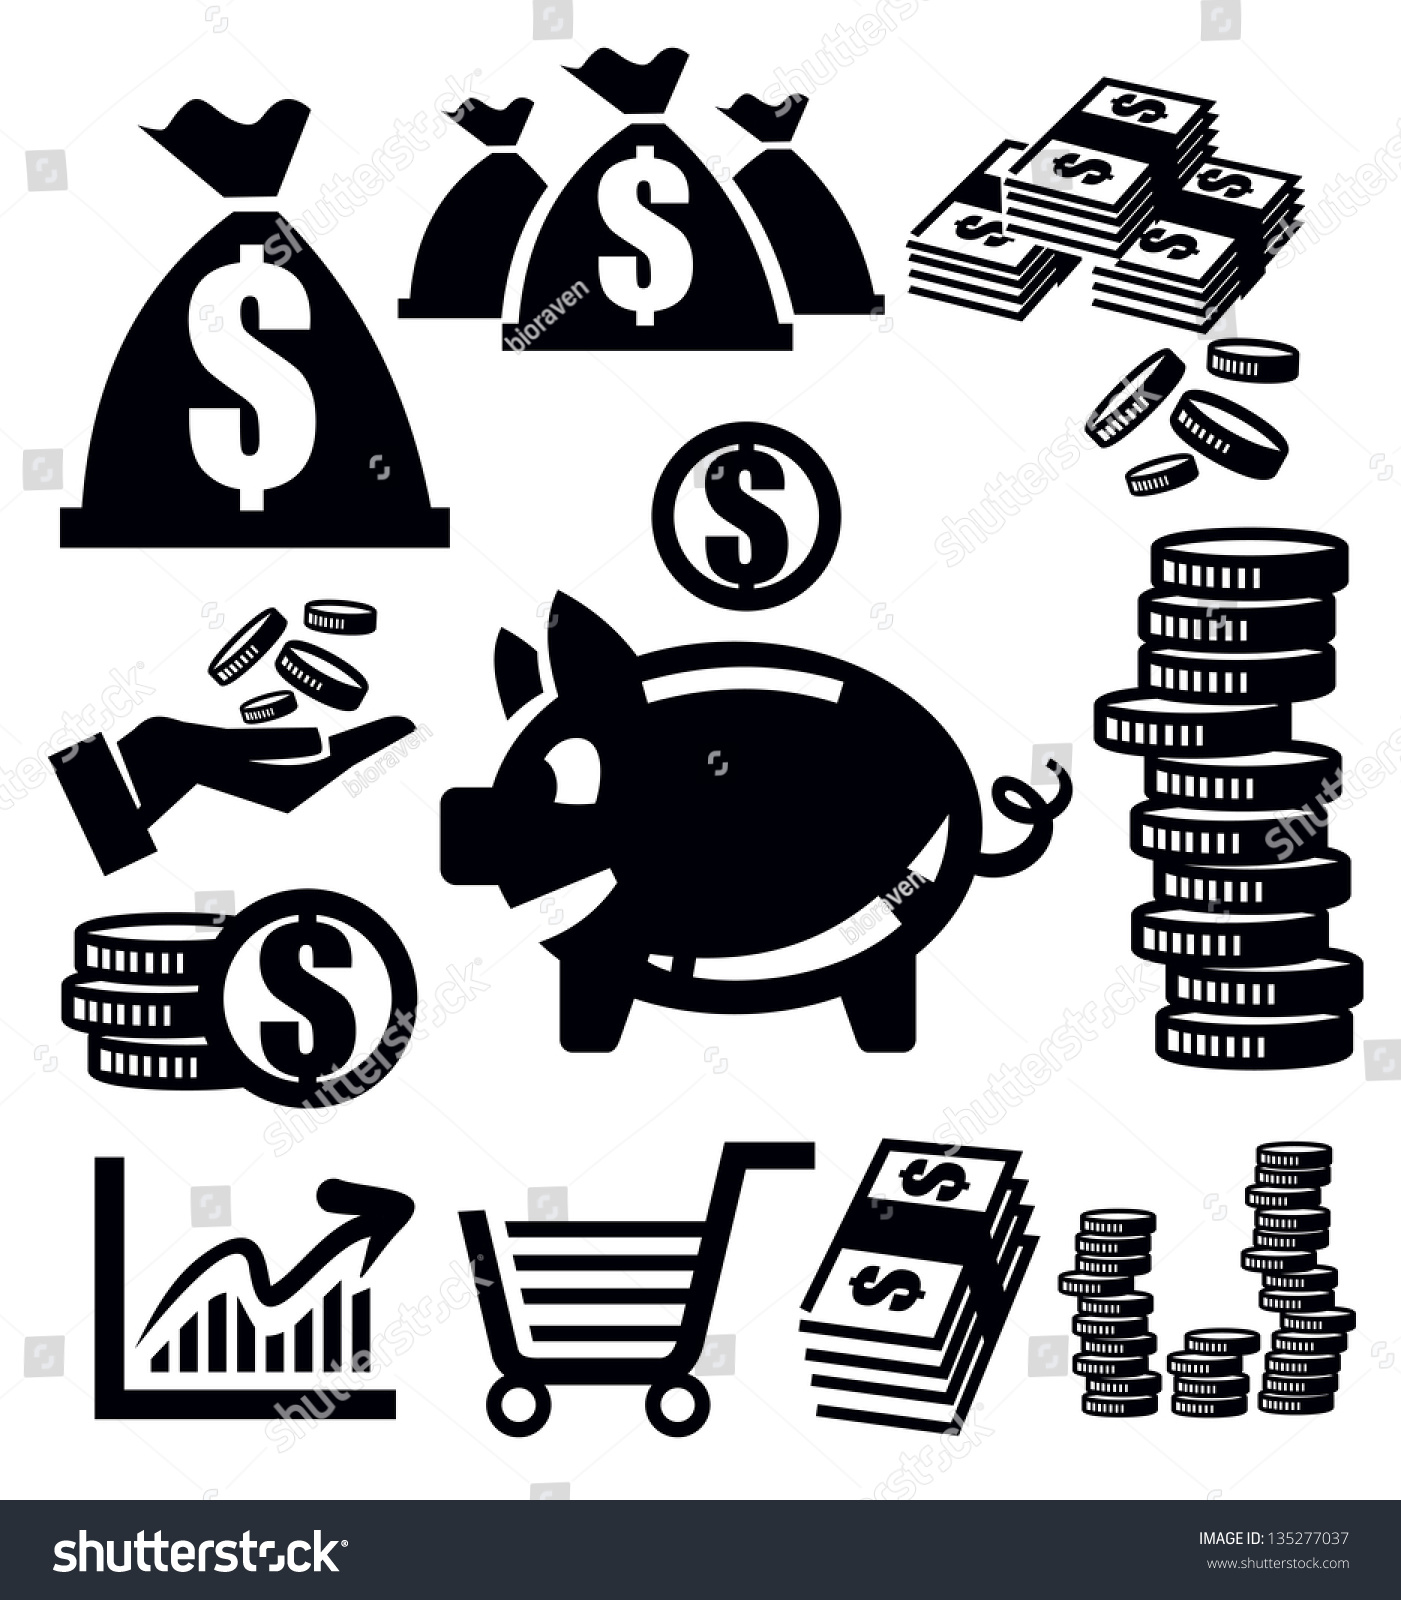 Vector Black Money Icons Set On White - 135277037 : Shutterstock